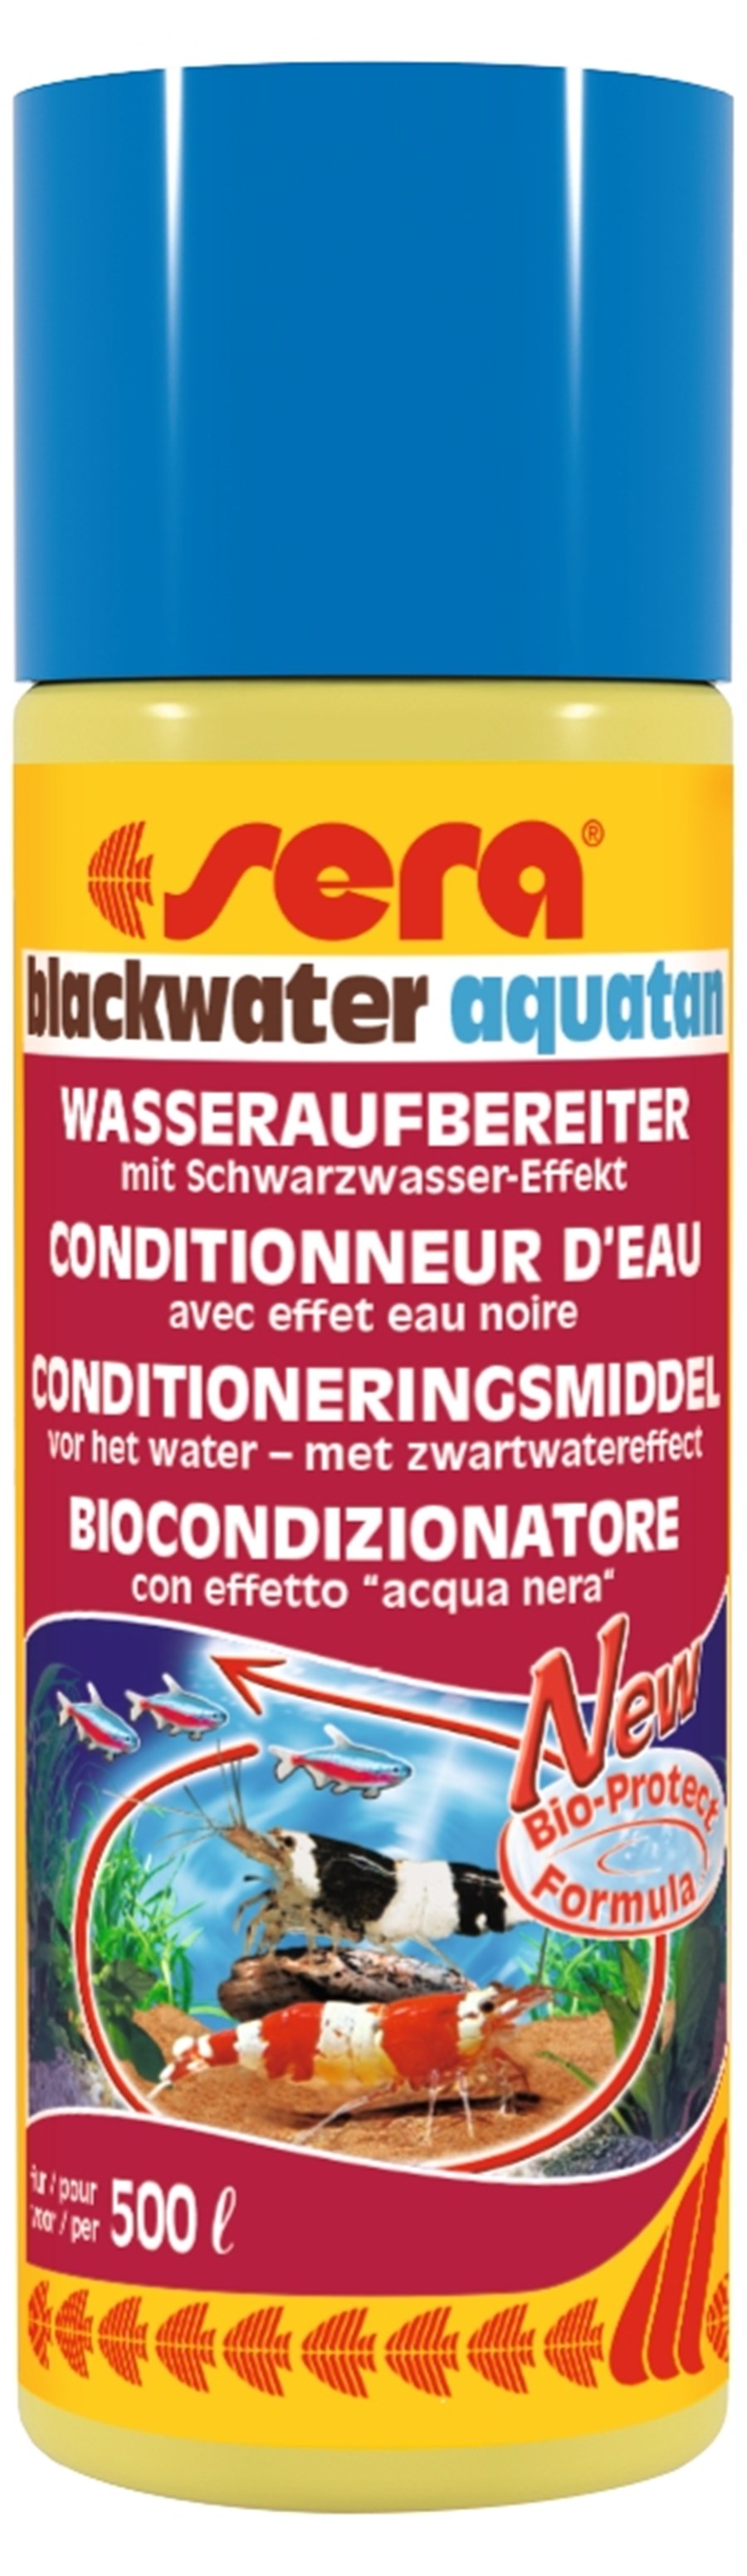 sera Blackwater aquatan  500 ml